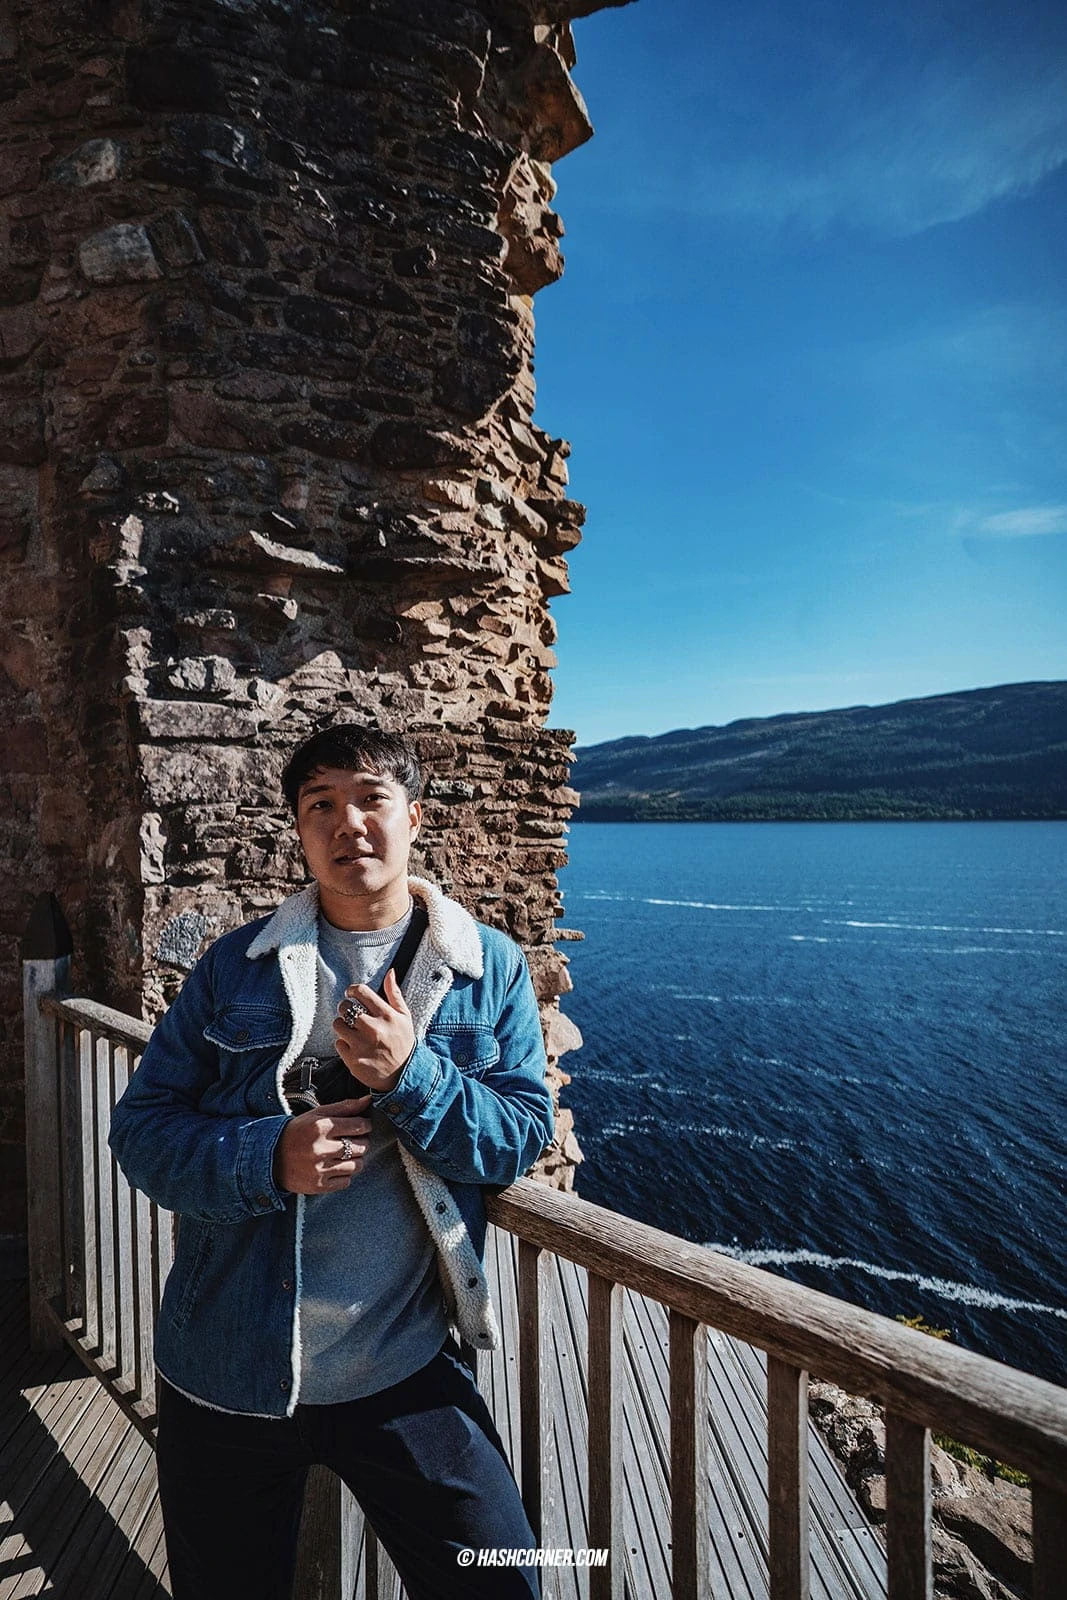 Inverness x Loch Ness : A Scenic Roadtrip Through Scotland